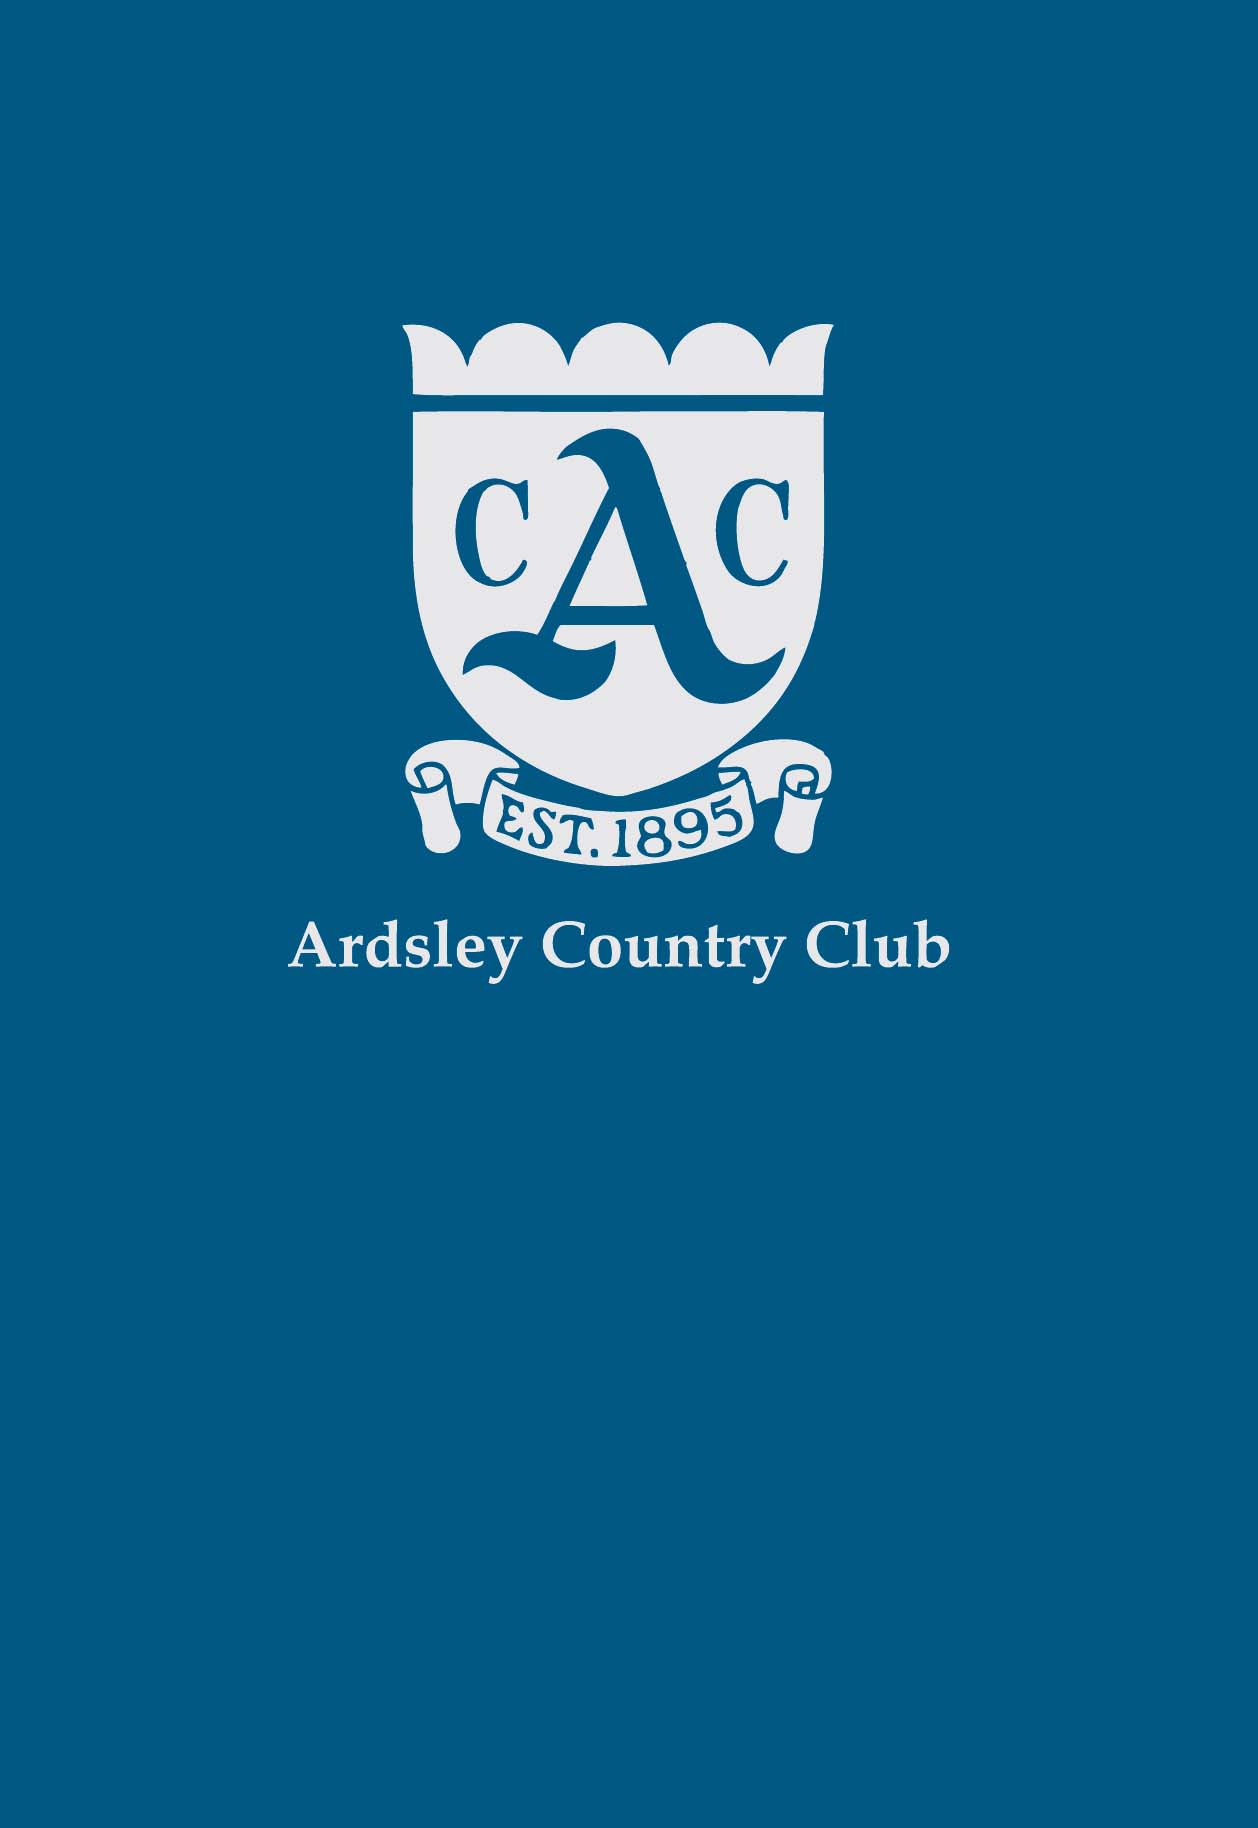 Ardsley CC